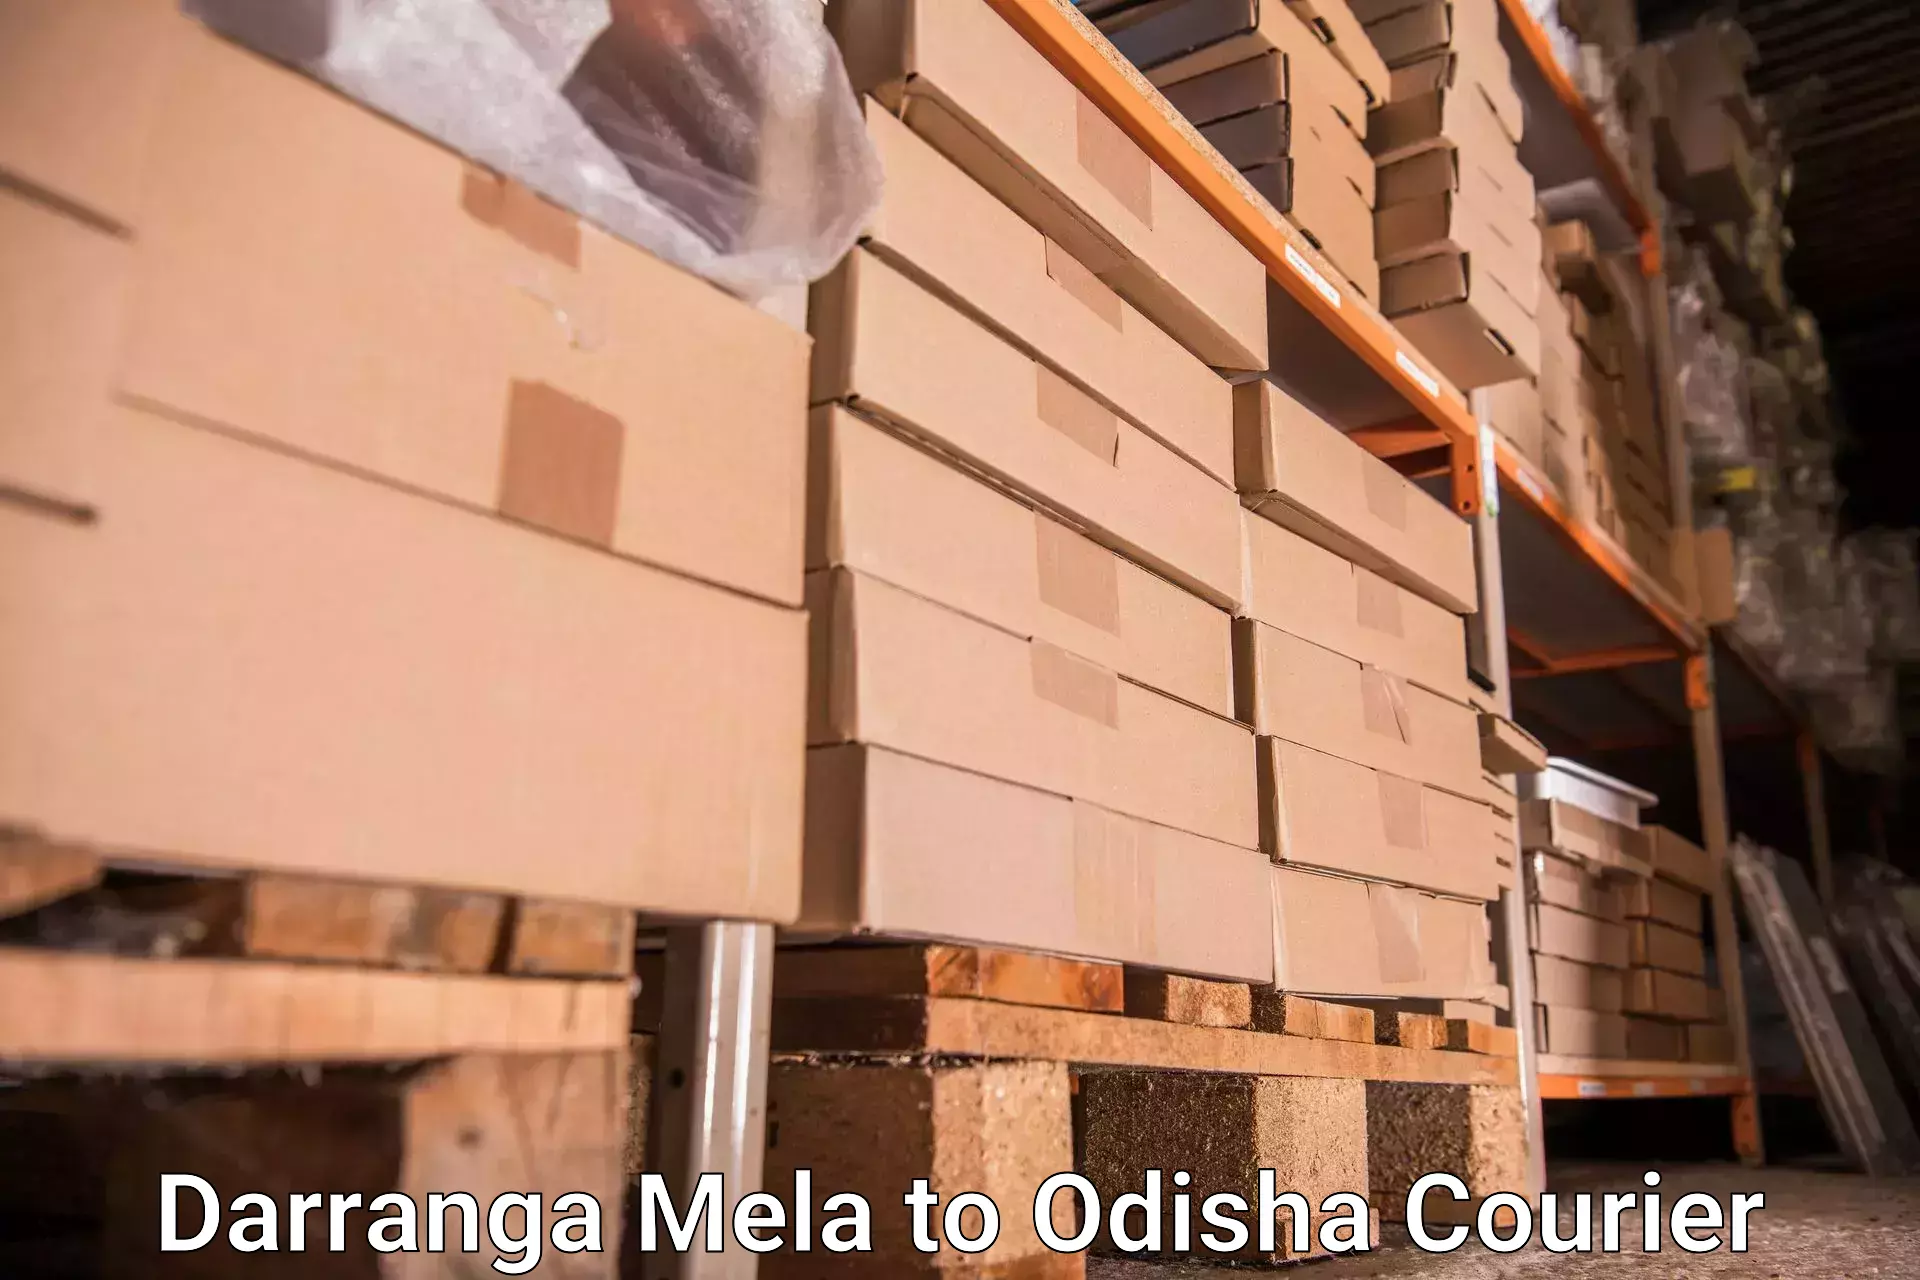 Baggage shipping schedule in Darranga Mela to Jagatpur